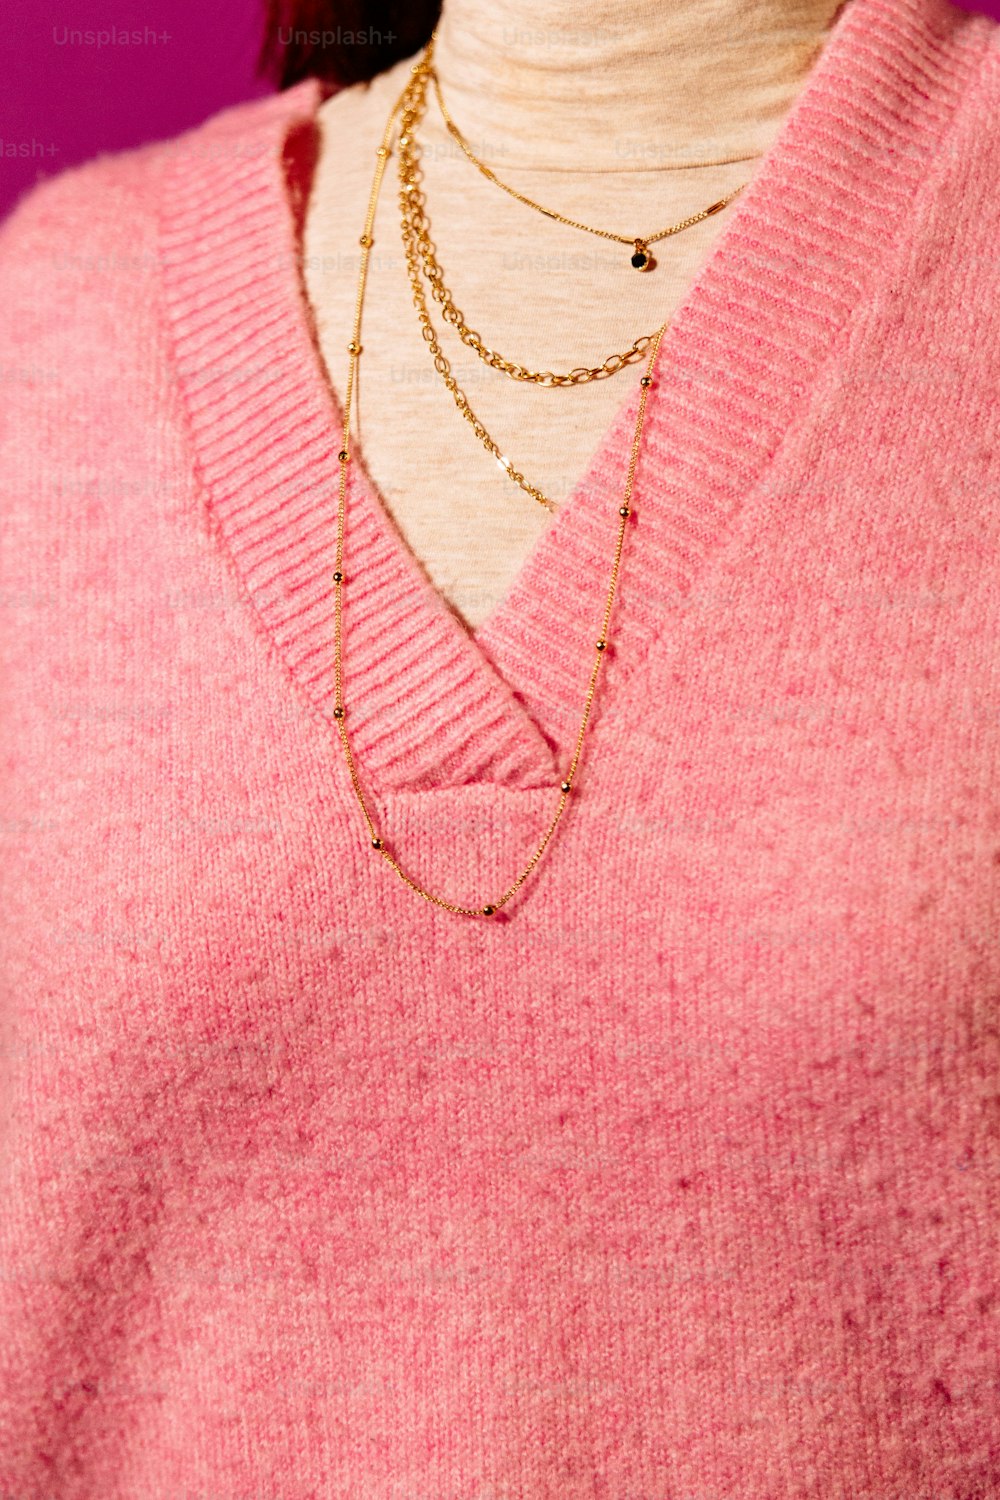 un primo piano di una persona che indossa un maglione rosa